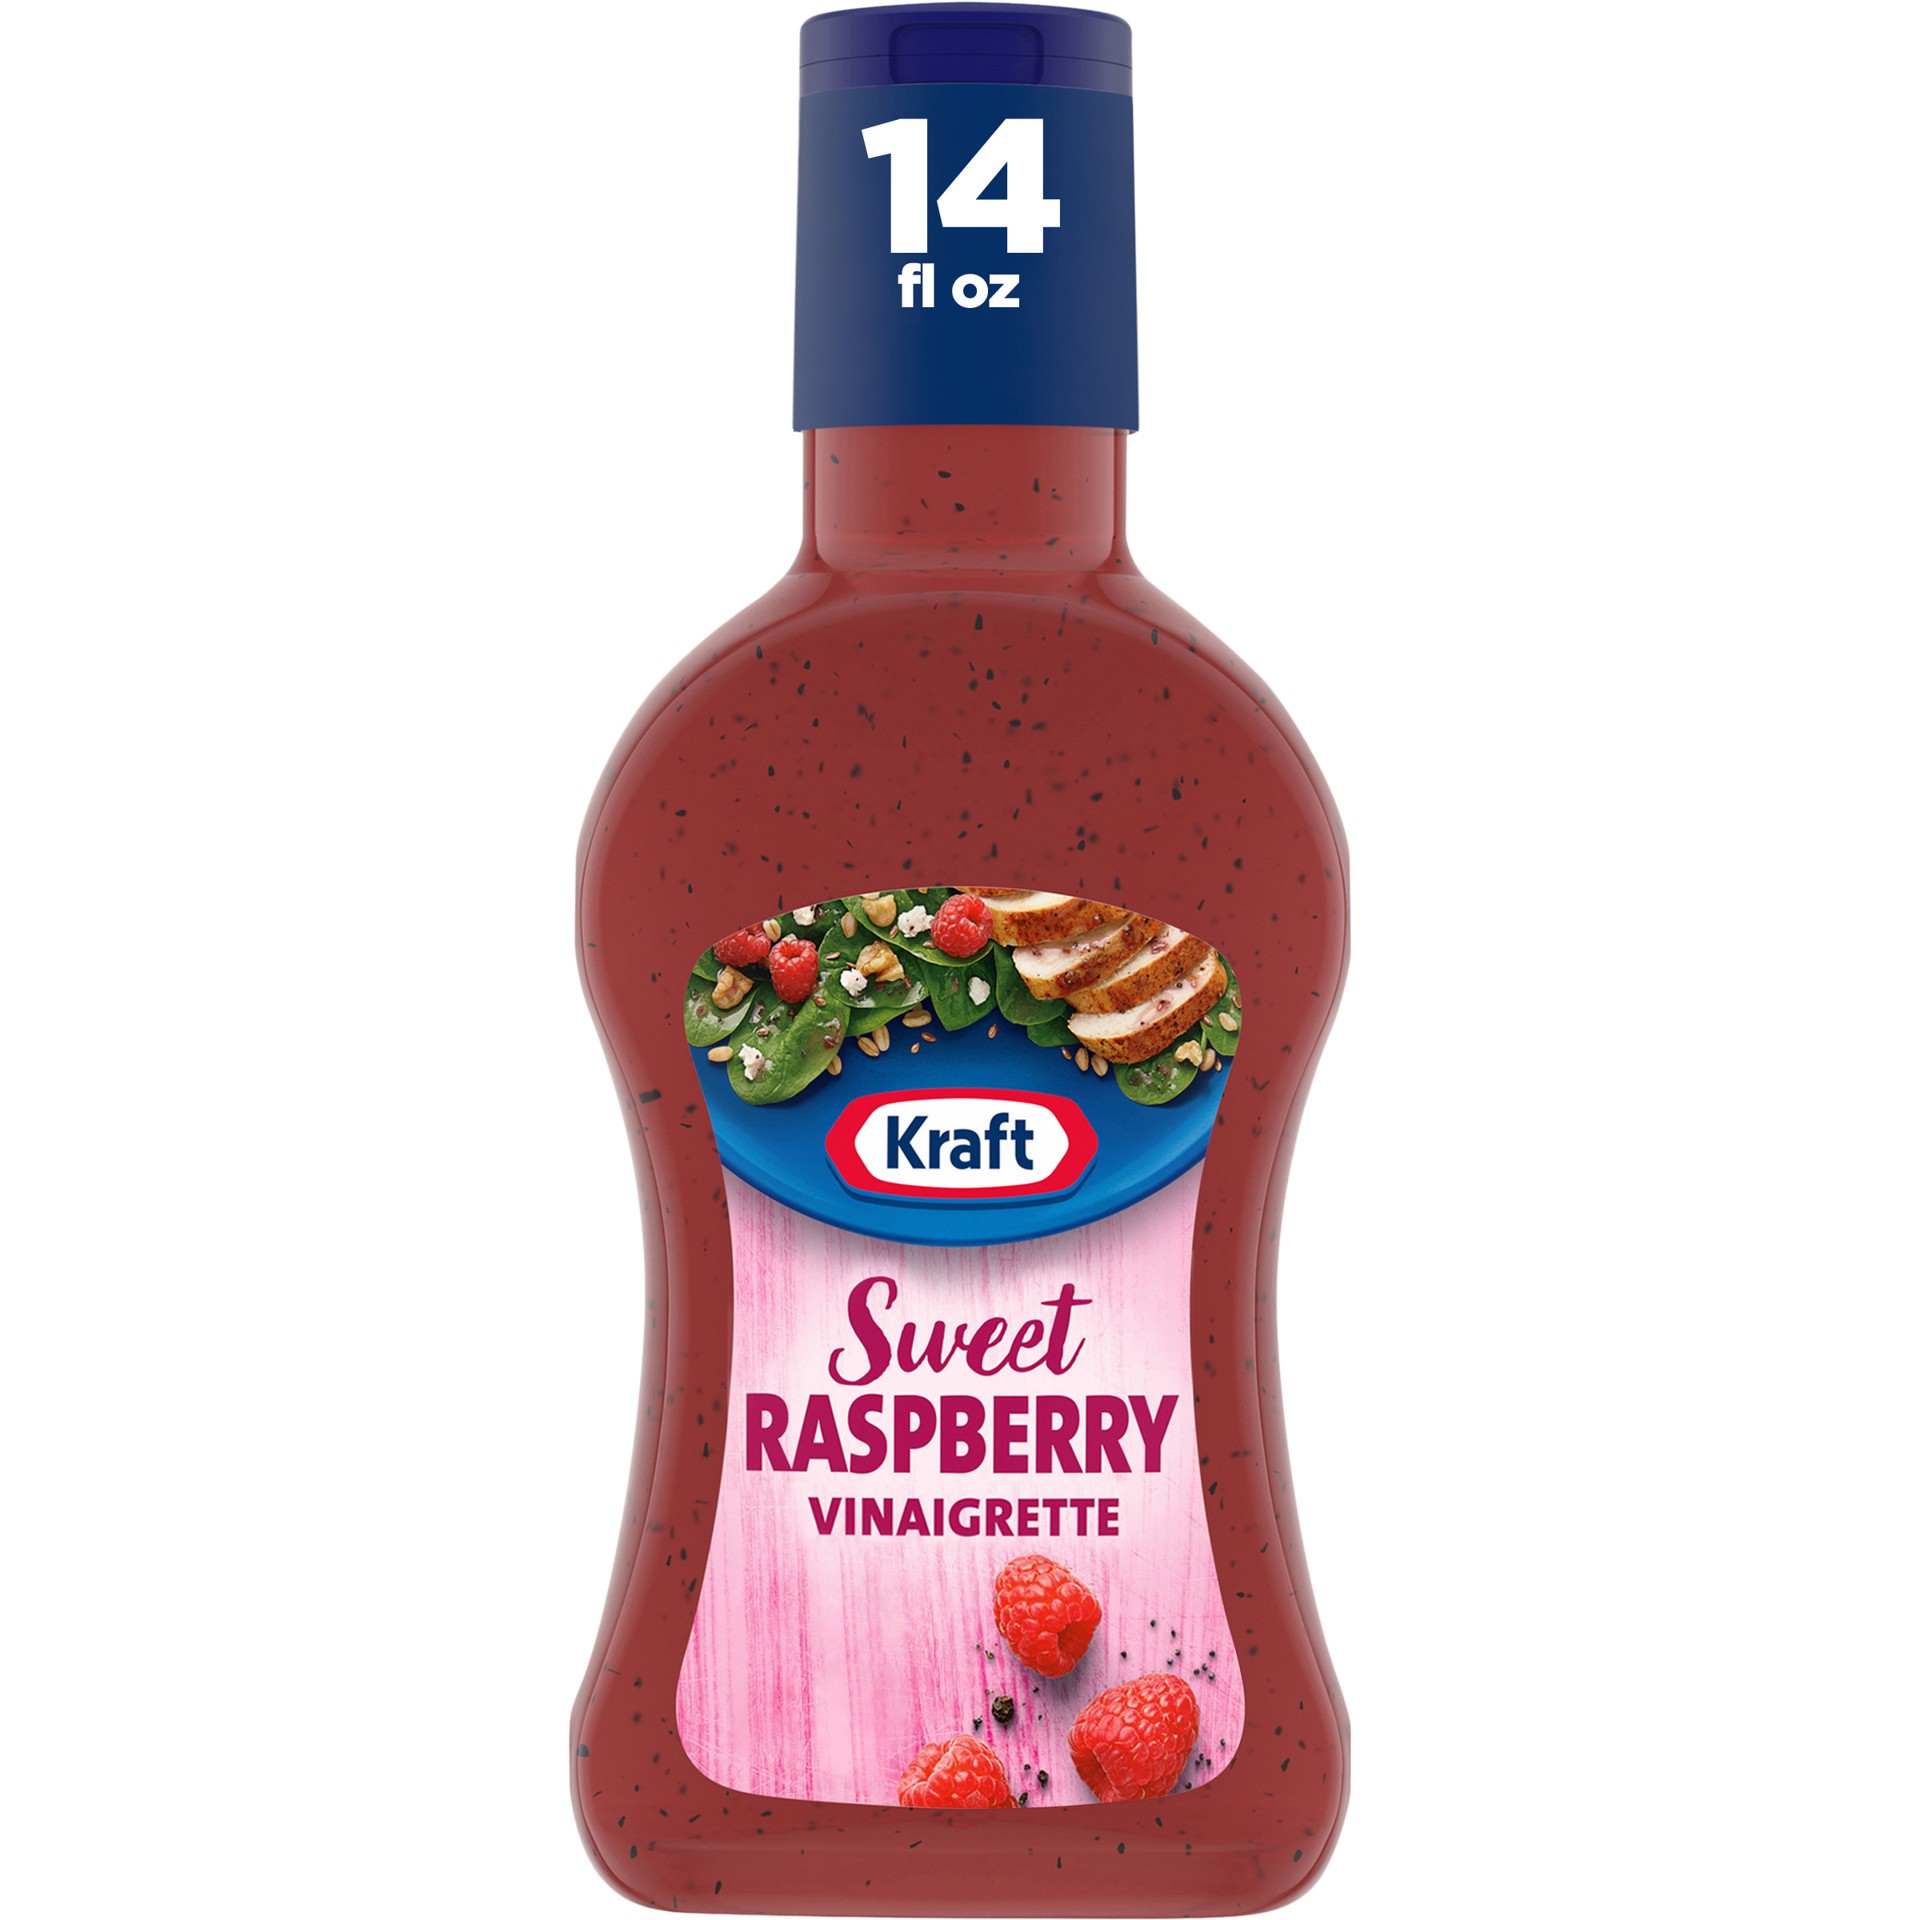 slide 1 of 7, Kraft Sweet Raspberry Vinaigrette Salad Dressing Bottle, 14 fl oz